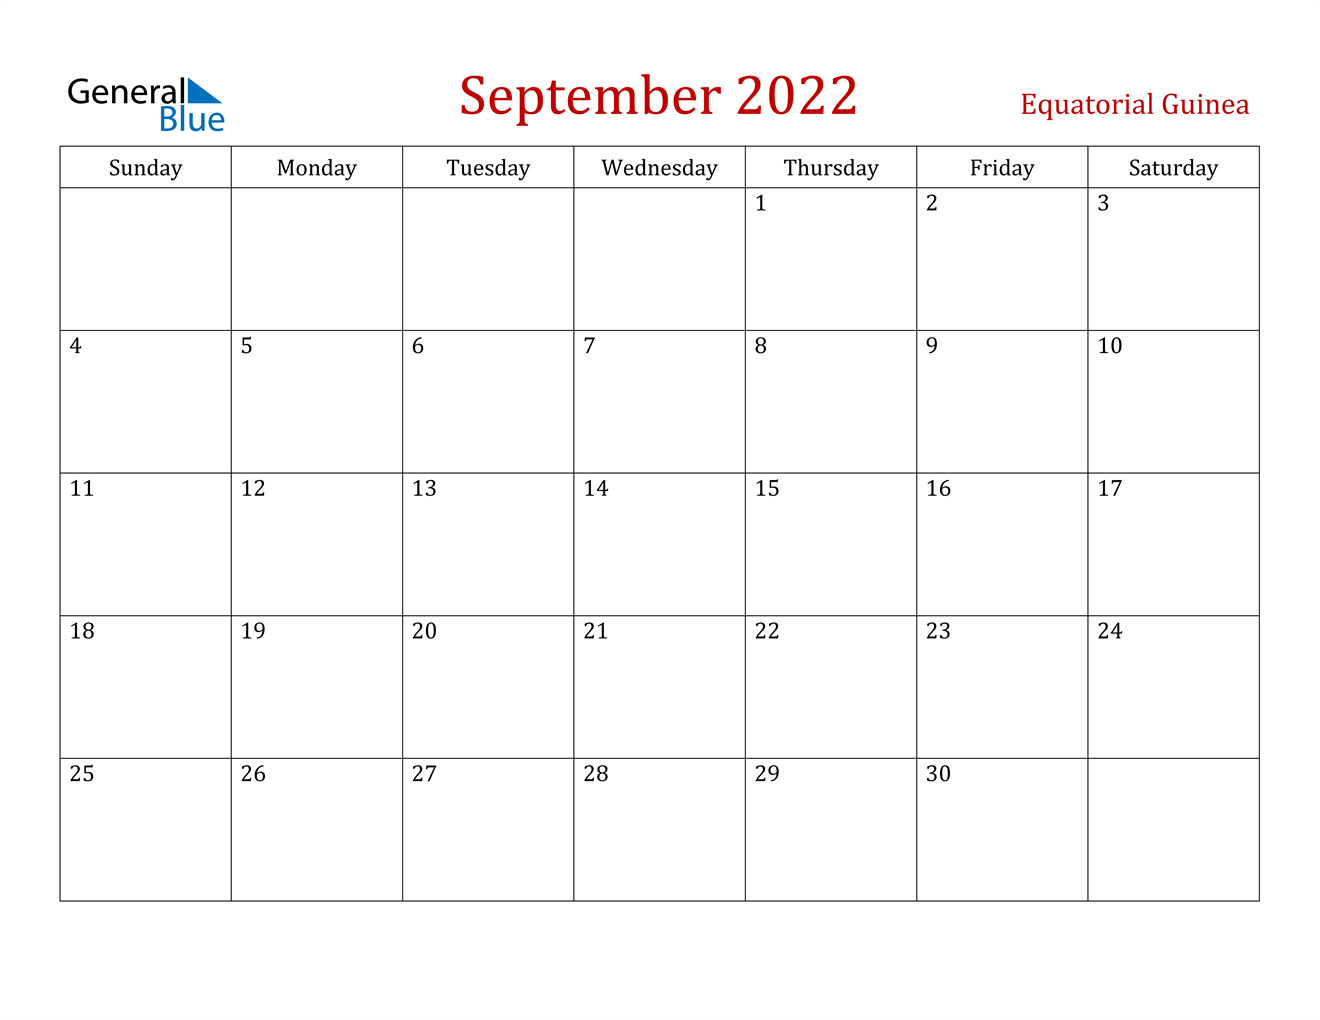 September 2022 Calendar - Equatorial Guinea